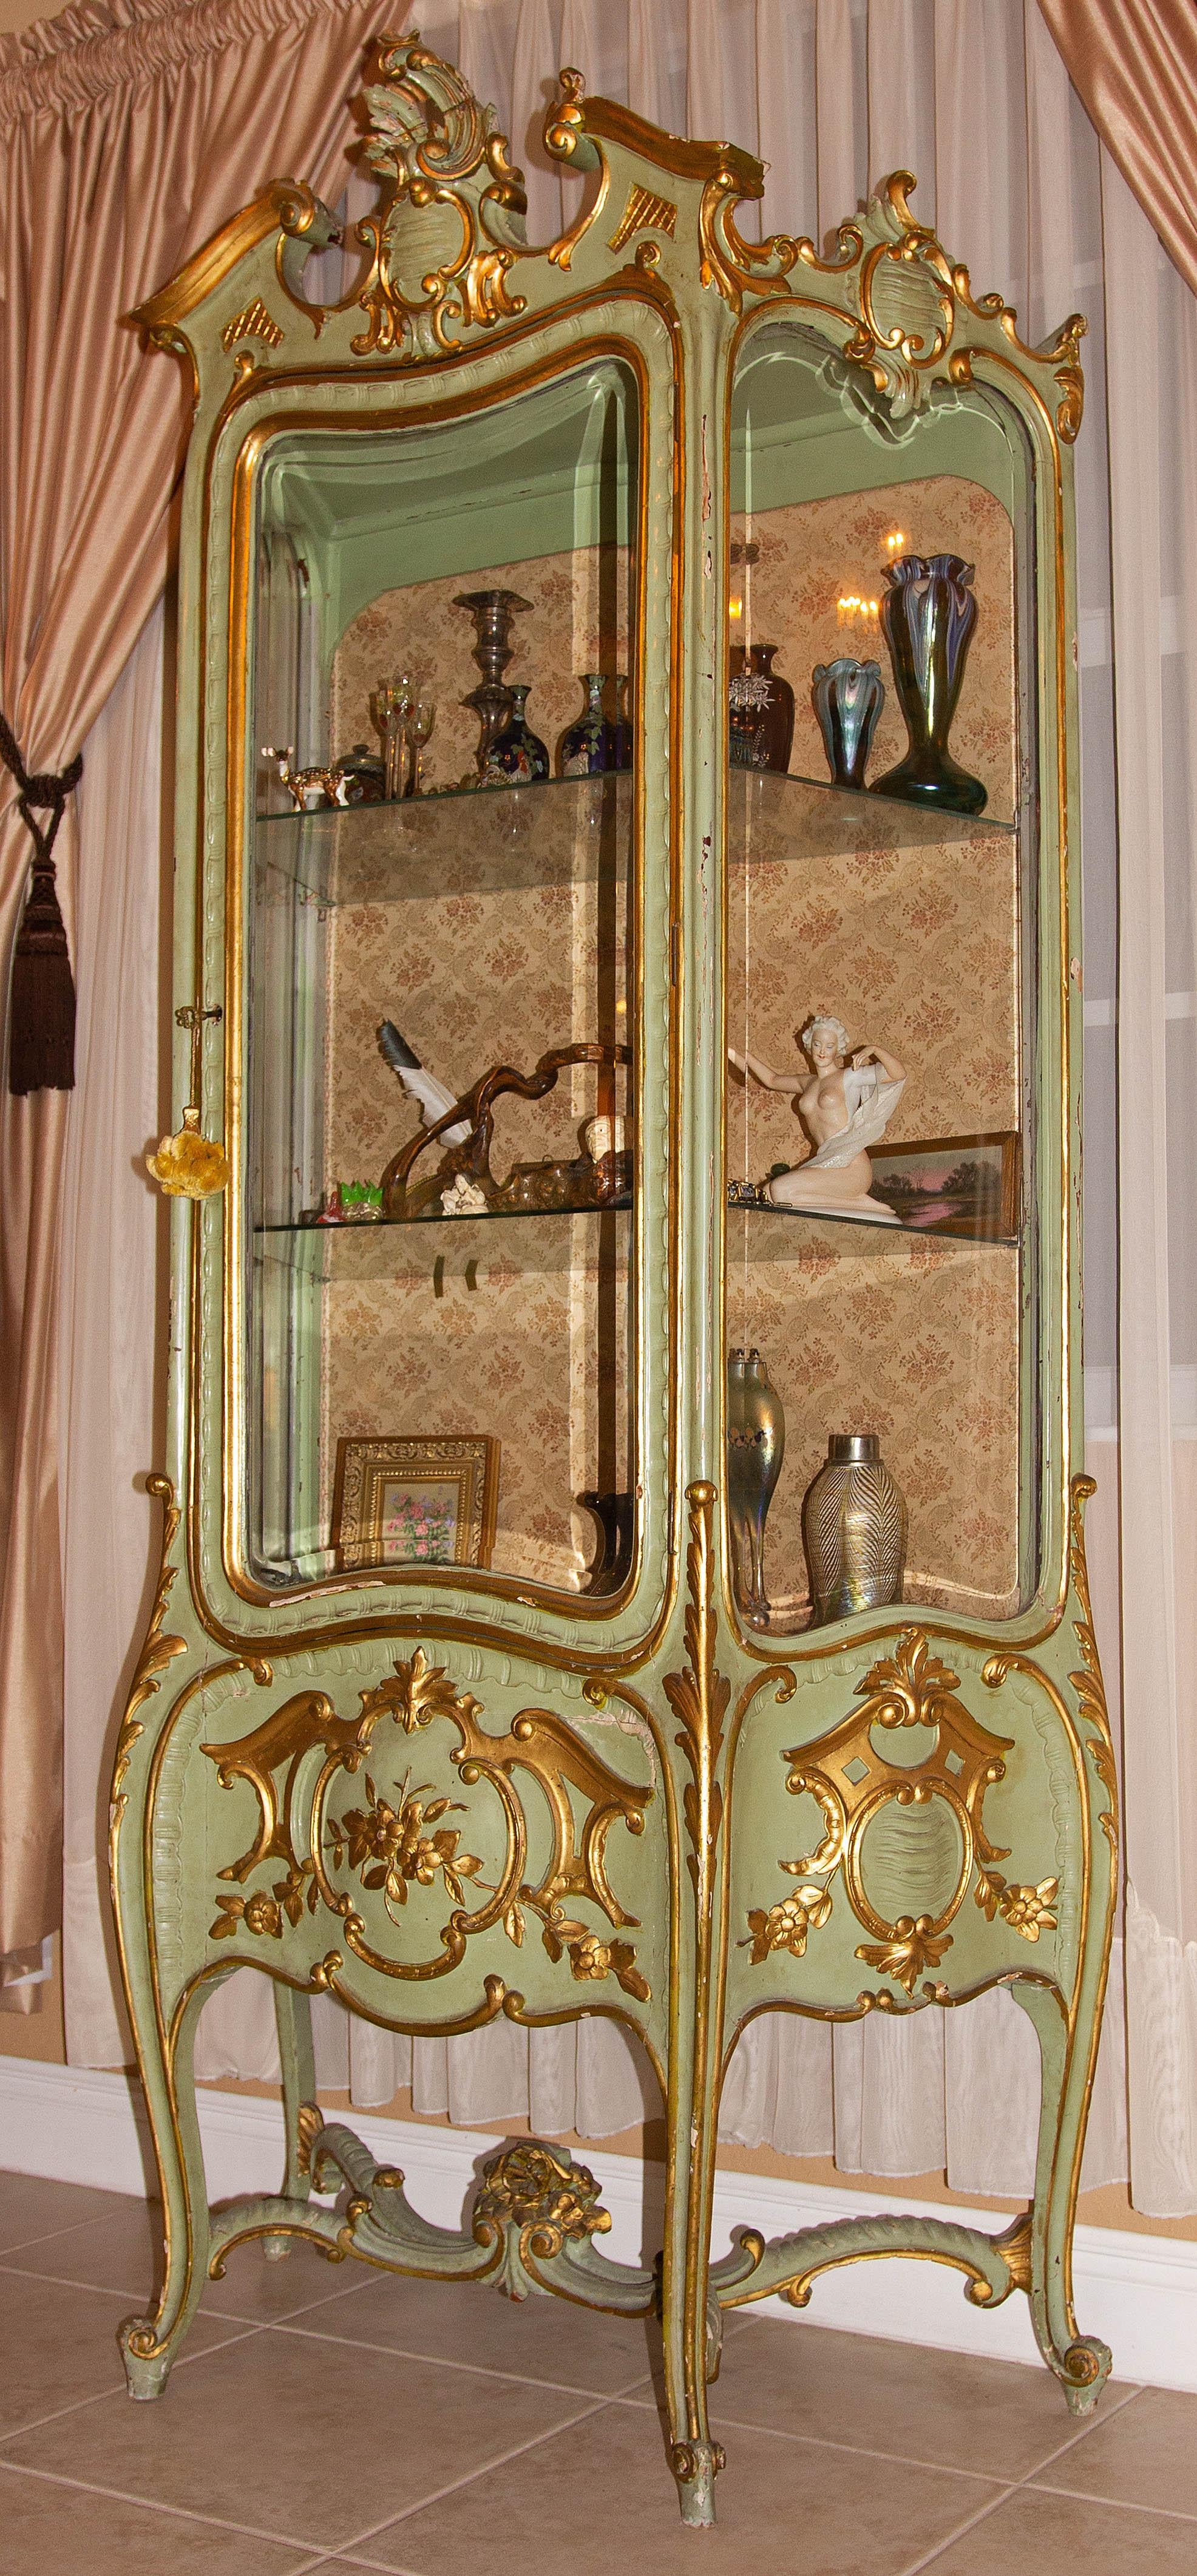 leon's curio cabinets